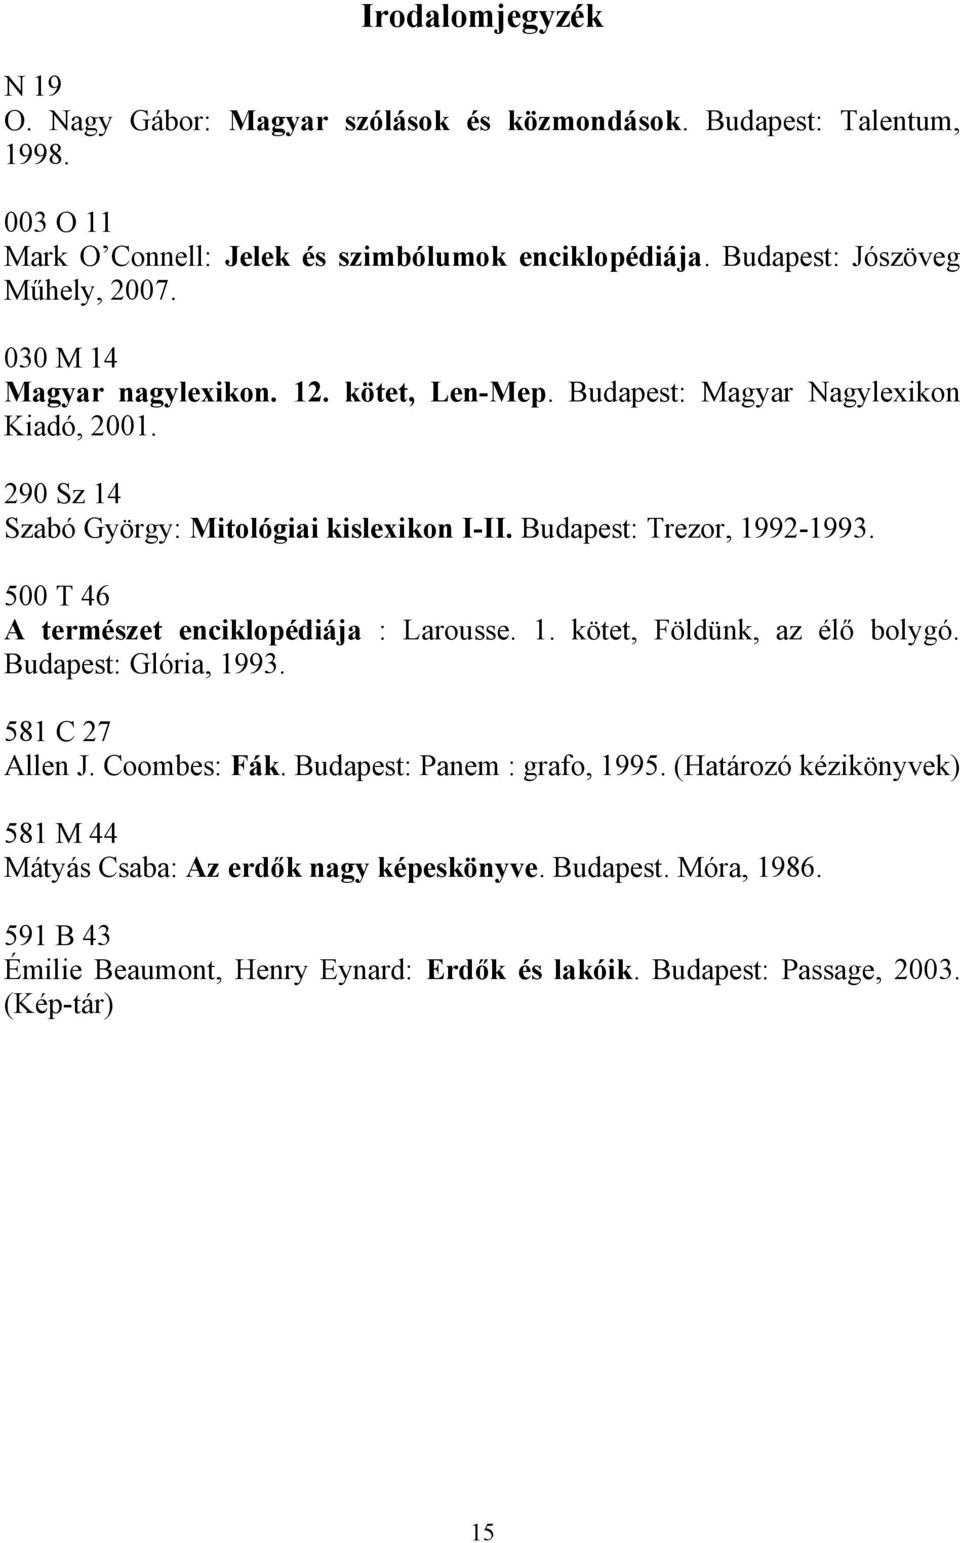 Budapest: Trezor, 1992-1993. 500 T 46 A természet enciklopédiája : Larousse. 1. kötet, Földünk, az élő bolygó. Budapest: Glória, 1993. 581 C 27 Allen J. Coombes: Fák.